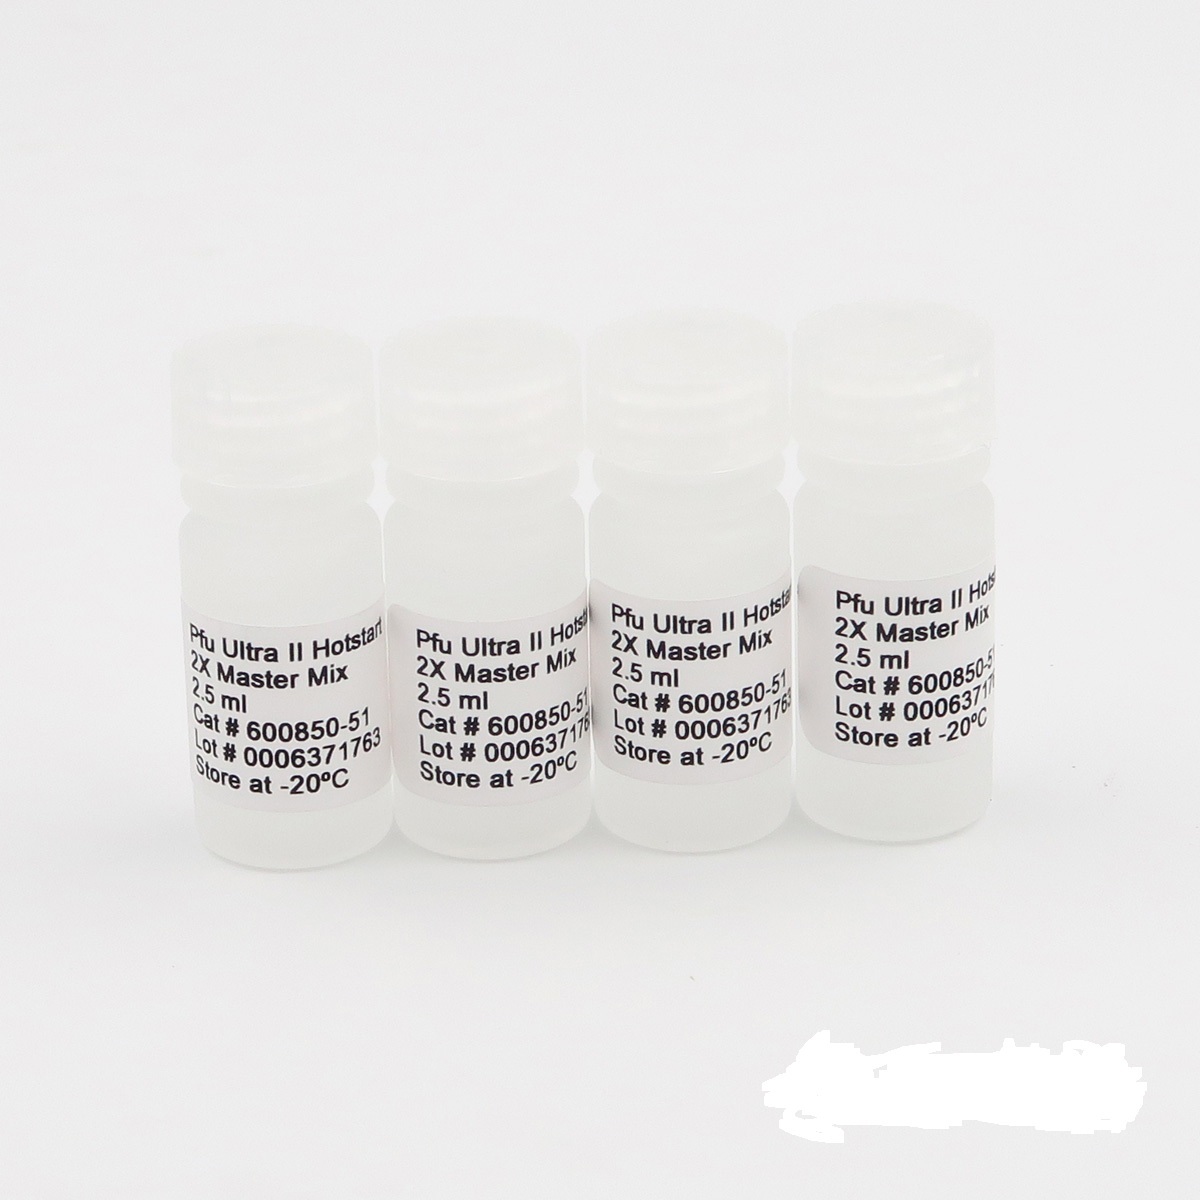 致病性大肠杆菌通用染料法荧光定量PCR试剂盒